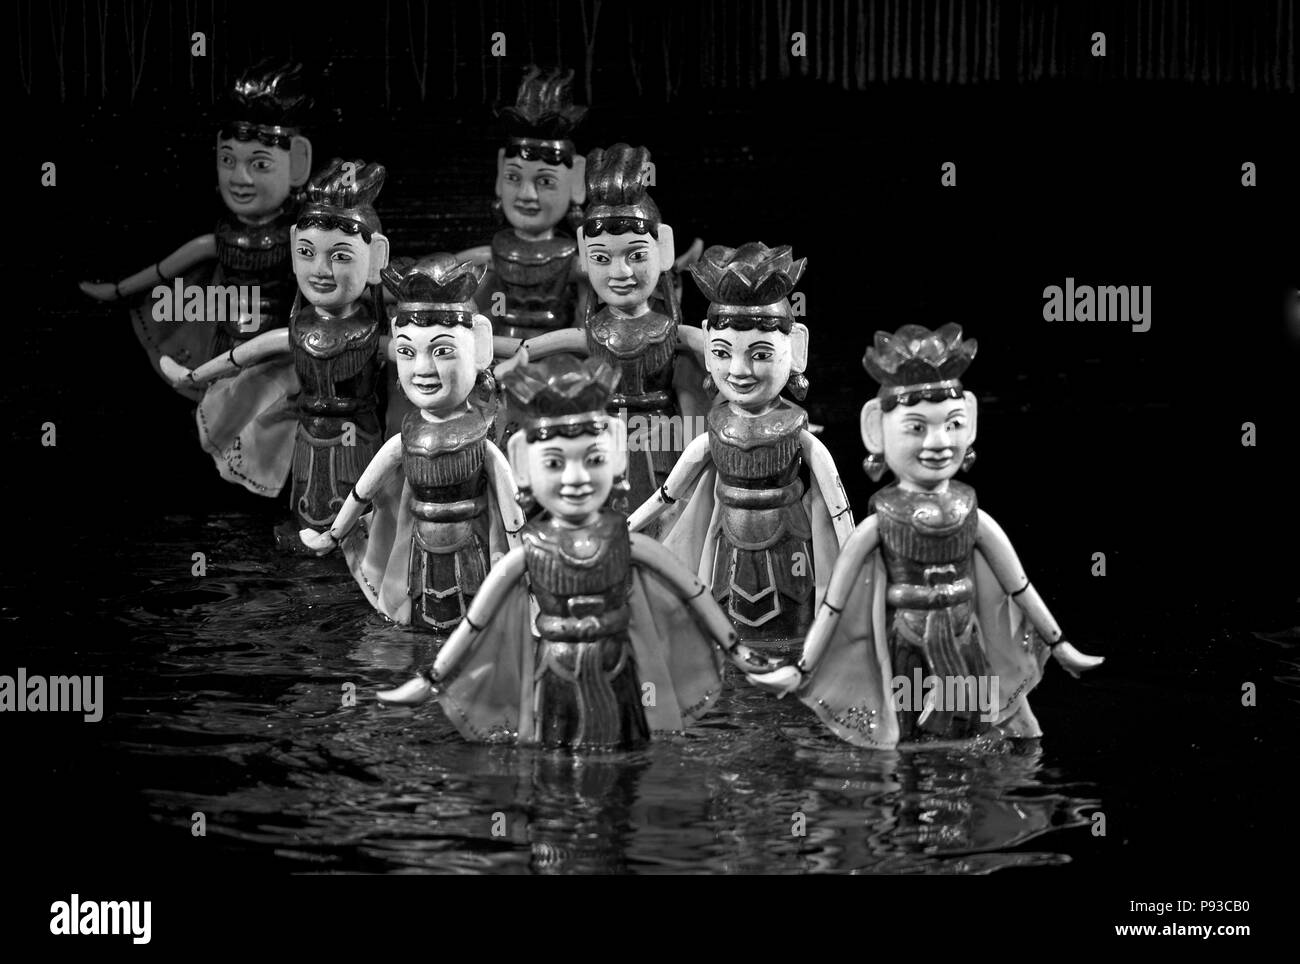 Tanzende Frauen während der Leistung an der Wasserpuppentheater Thang Long - Hanoi, Vietnam Stockfoto